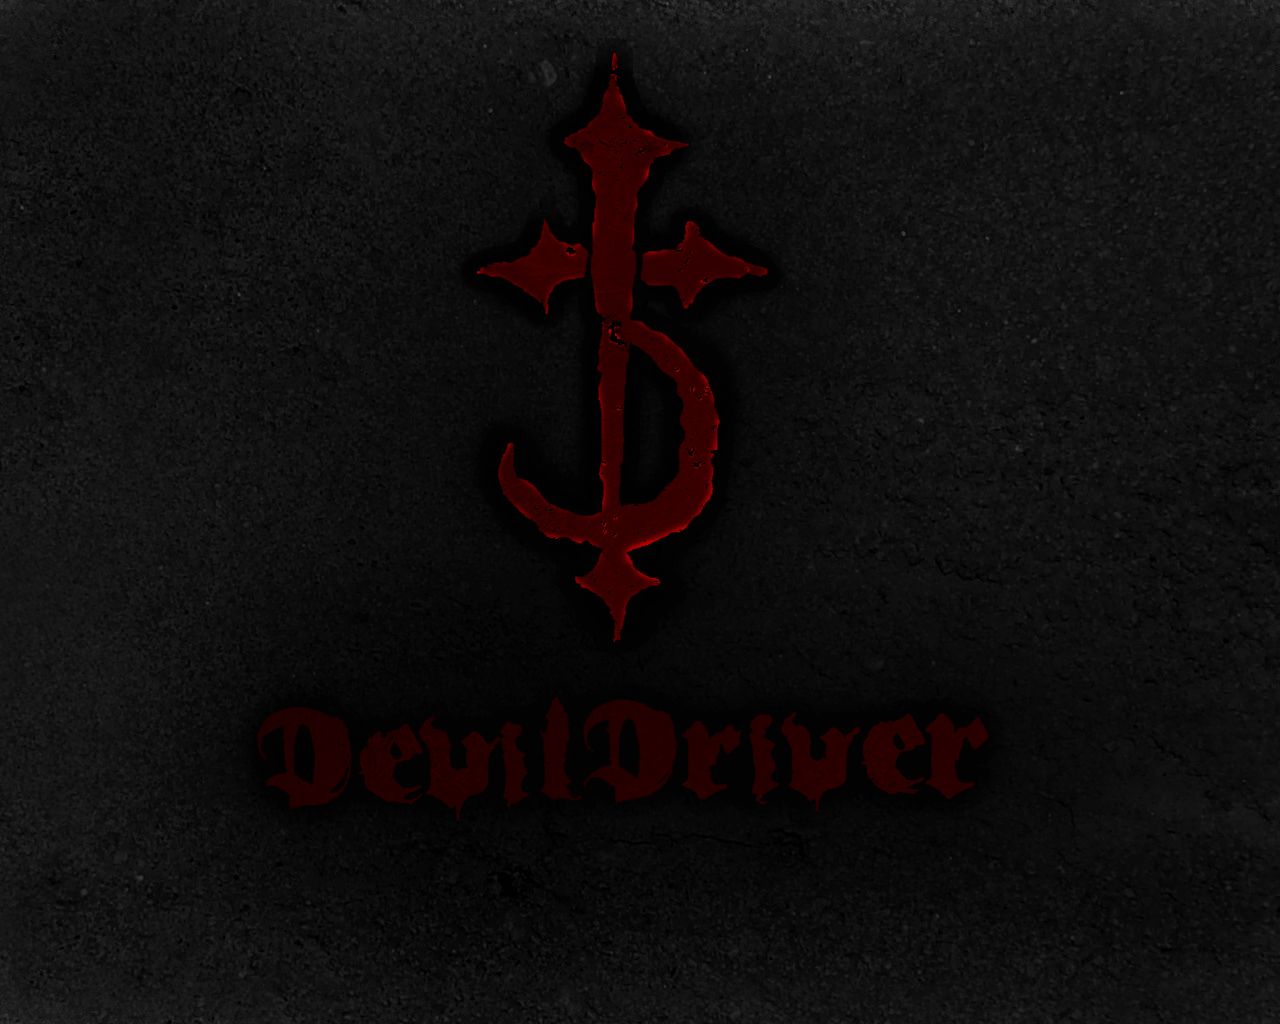 DevilDriver Wallpaper. DevilDriver